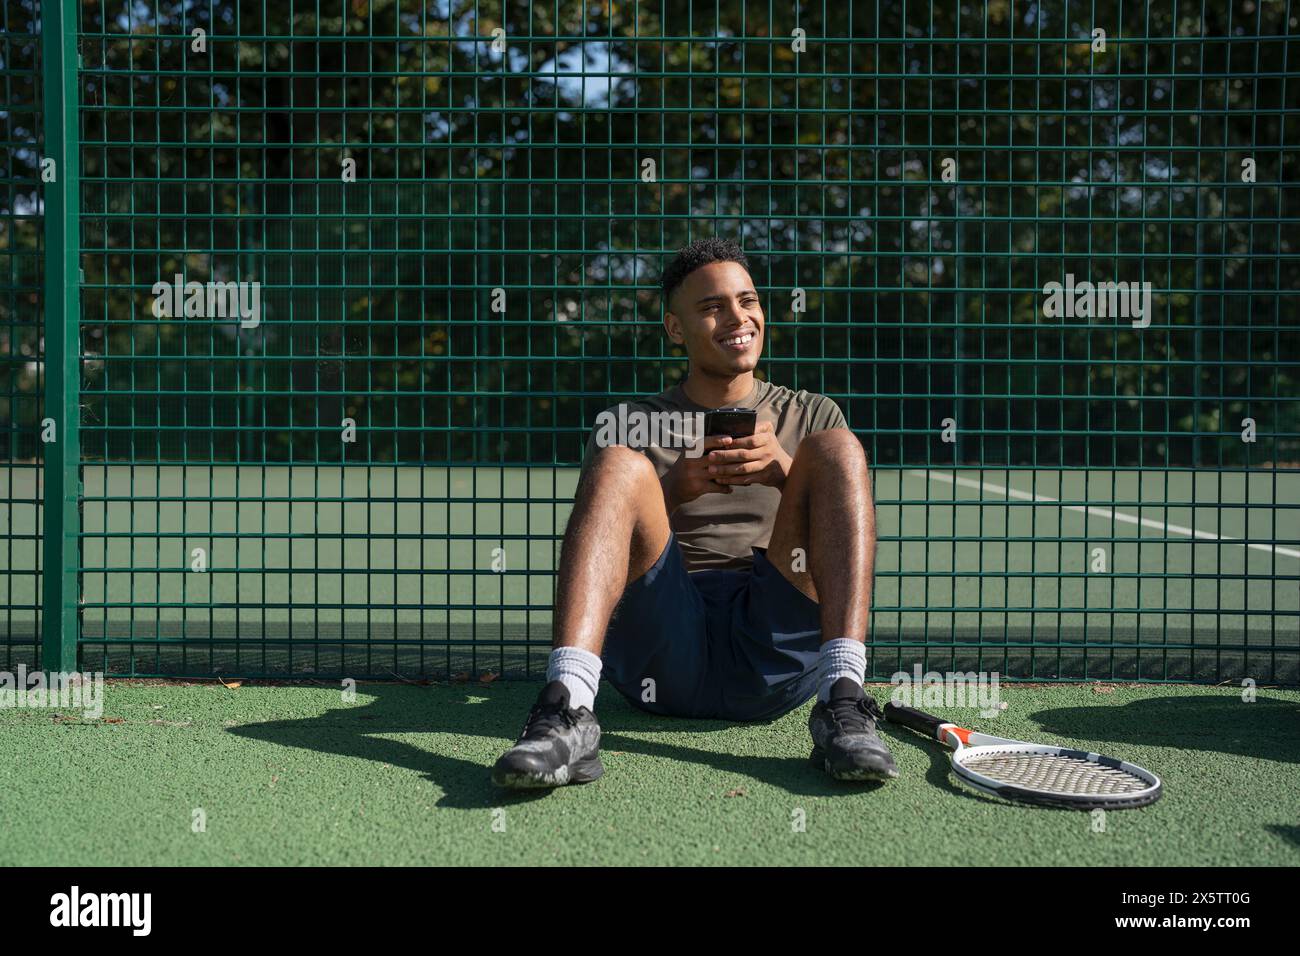 Lächelnder Mann, der auf dem Tennisplatz sitzt und das Smartphone hält Stockfoto